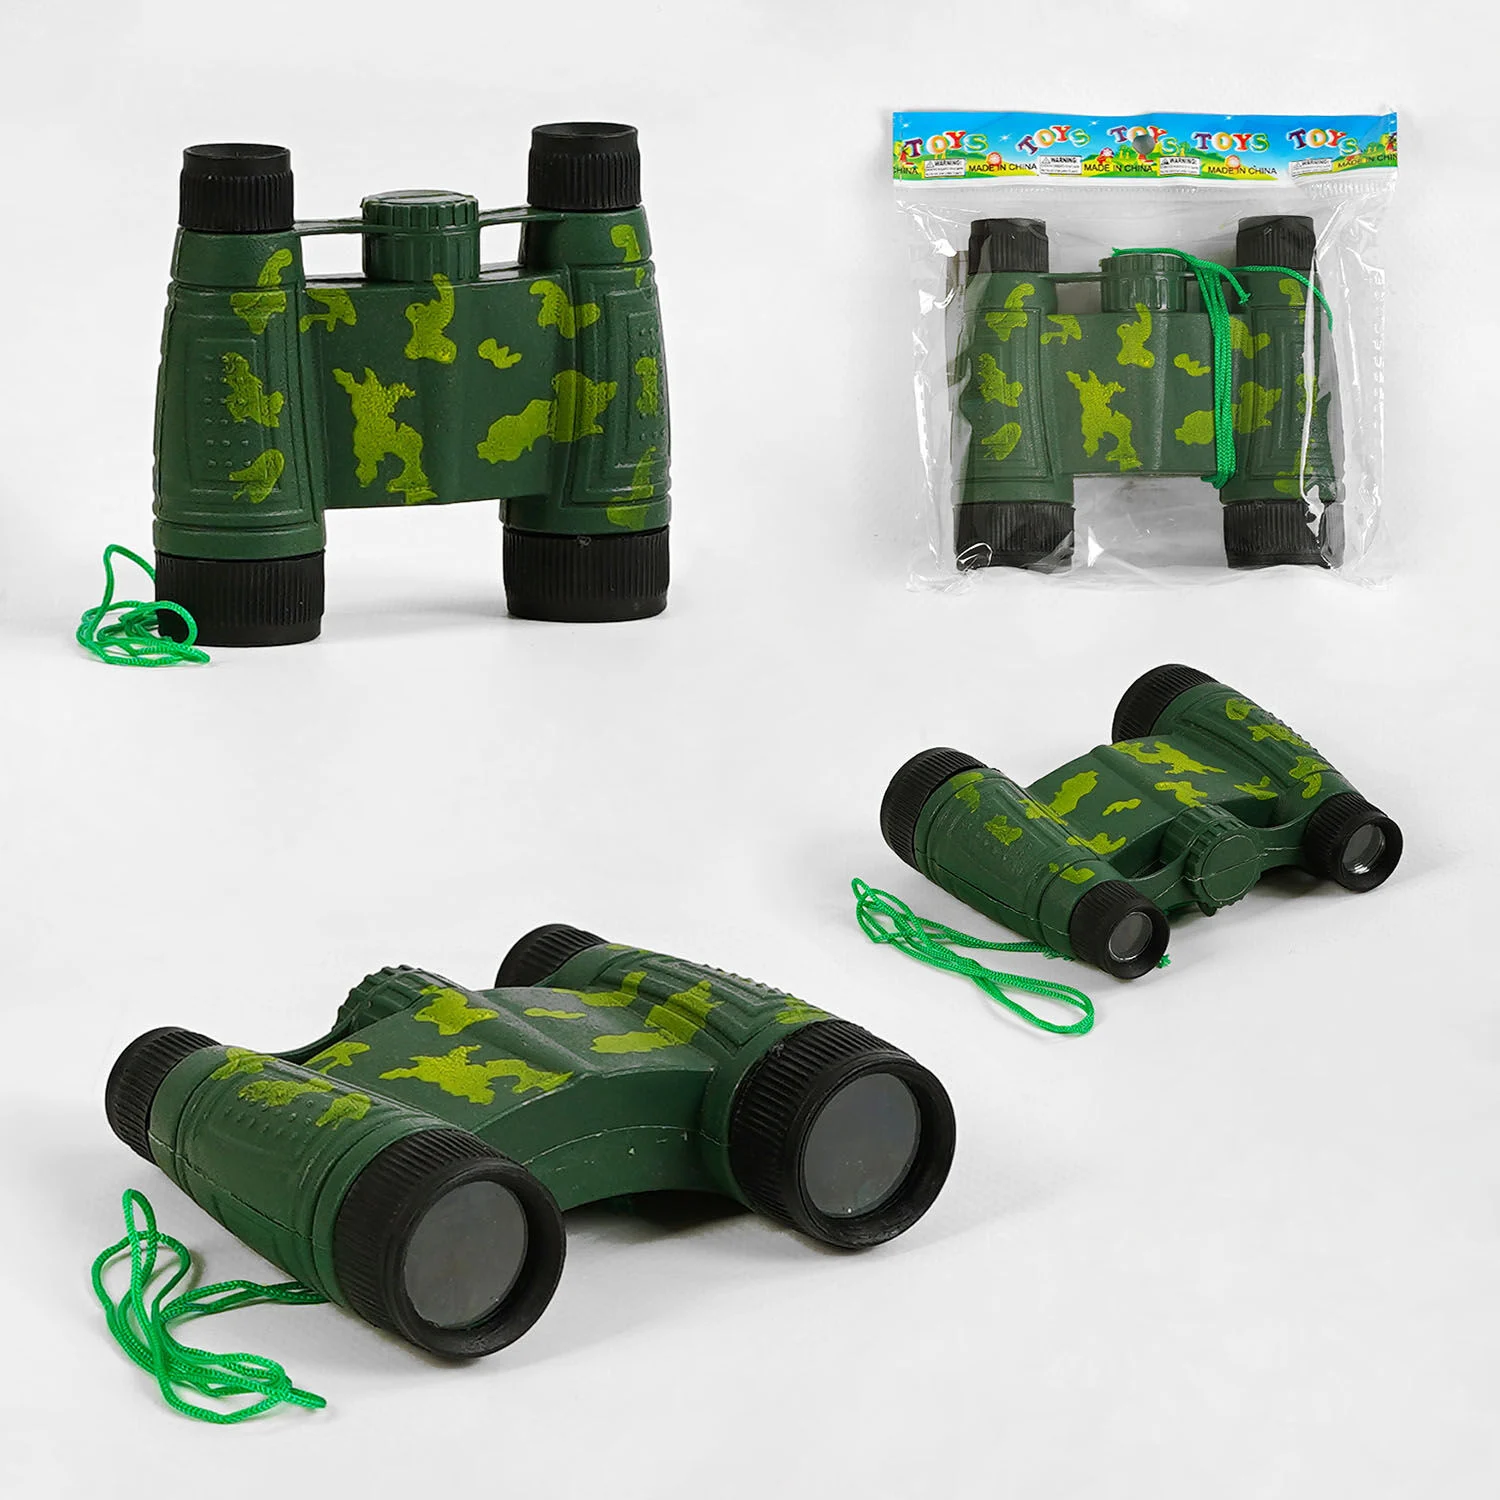 Фотография 1 товарной позиции интернет-магазина детских игрушек www.smarttoys.com.ua Бінокль 005 (864/2) у пакеті